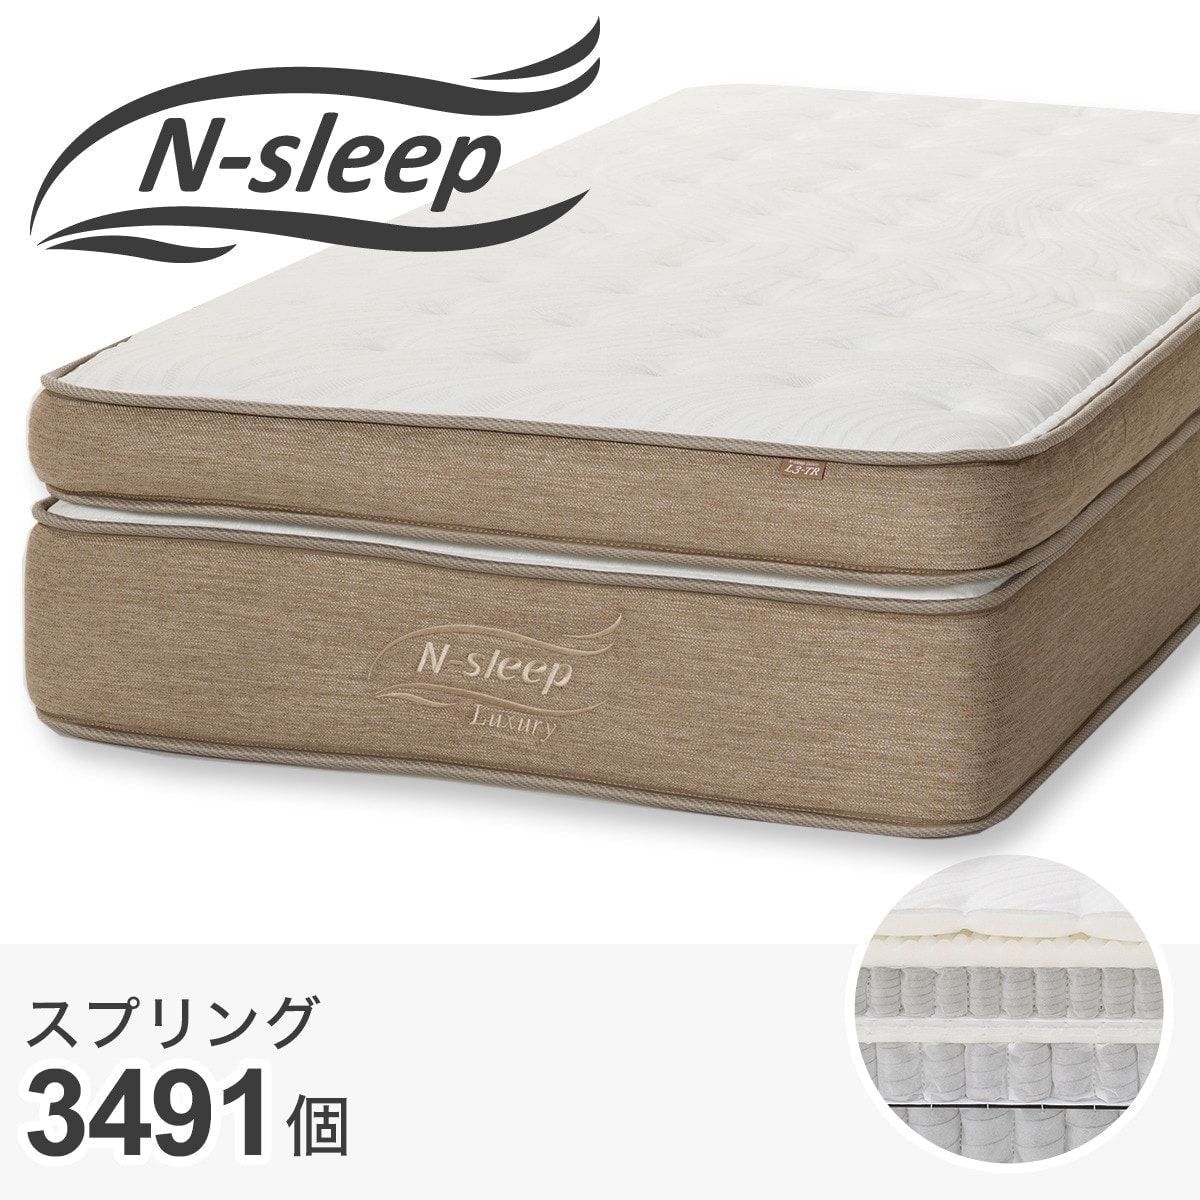 ニトリラグジュアリーL3-02TR ダブル n-sleep 定価139,000円 | labiela.com